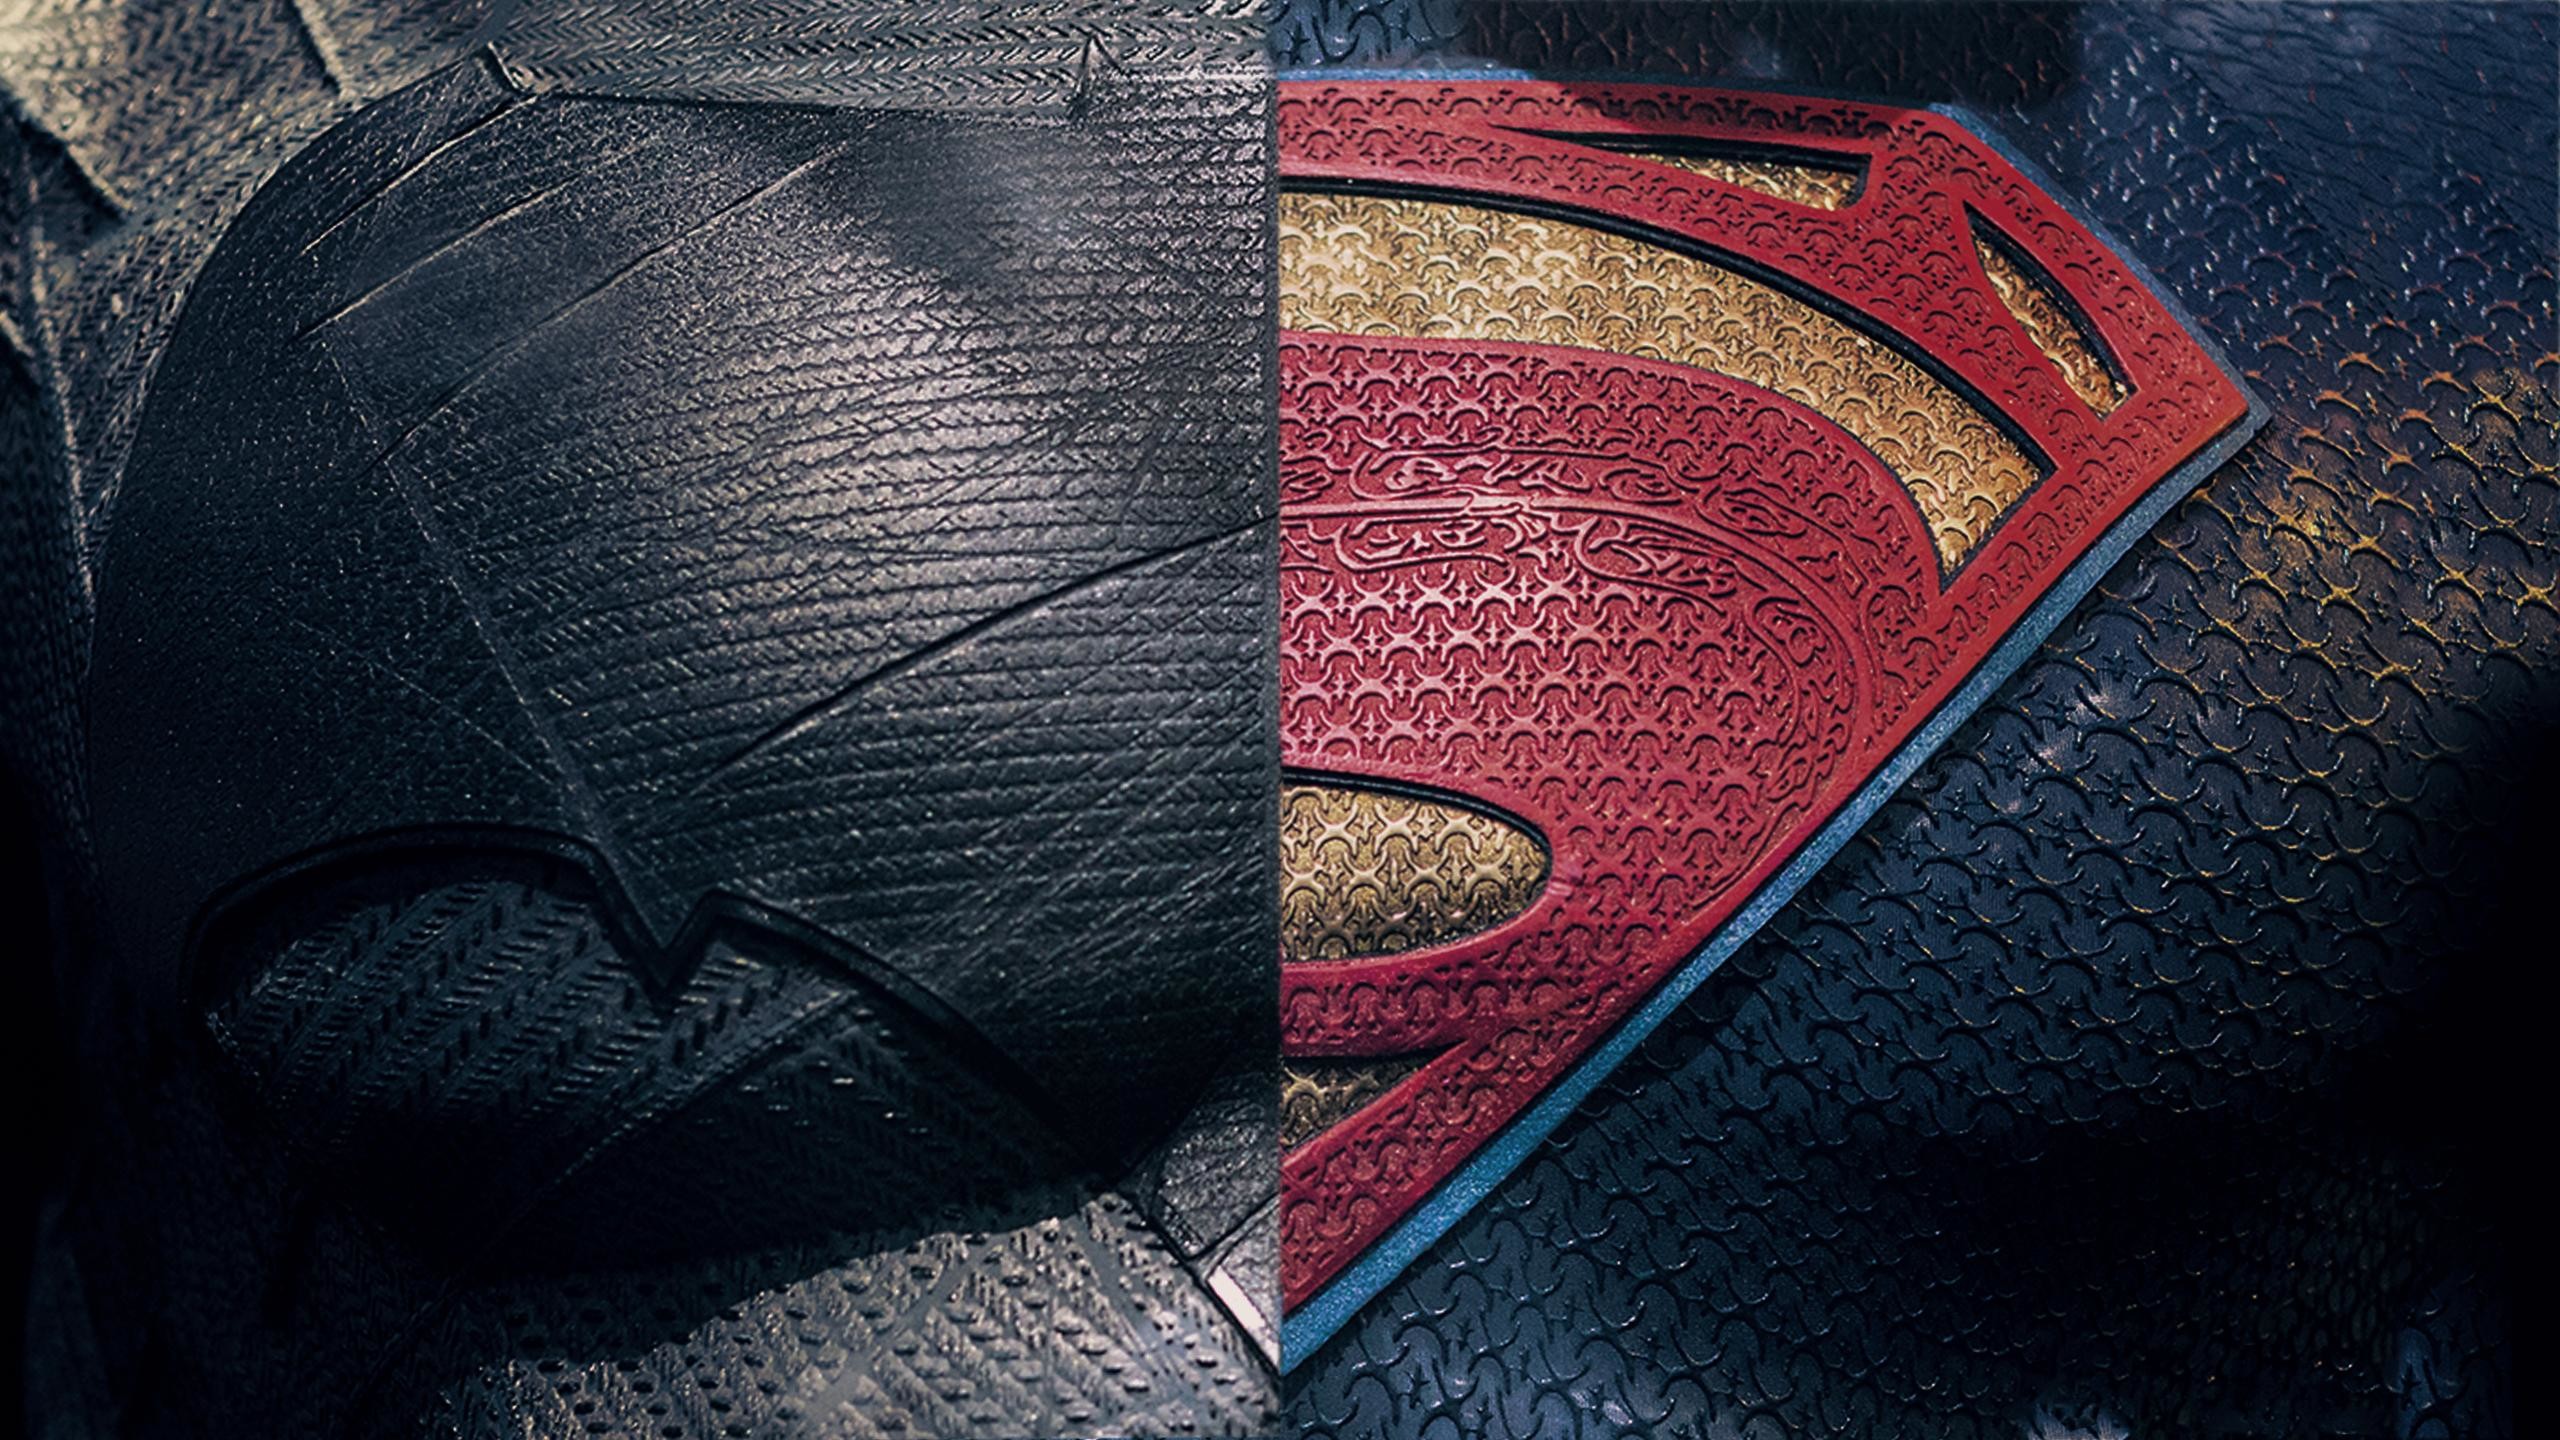 2560x1440 Batman V Superman - 5 Wallpapers